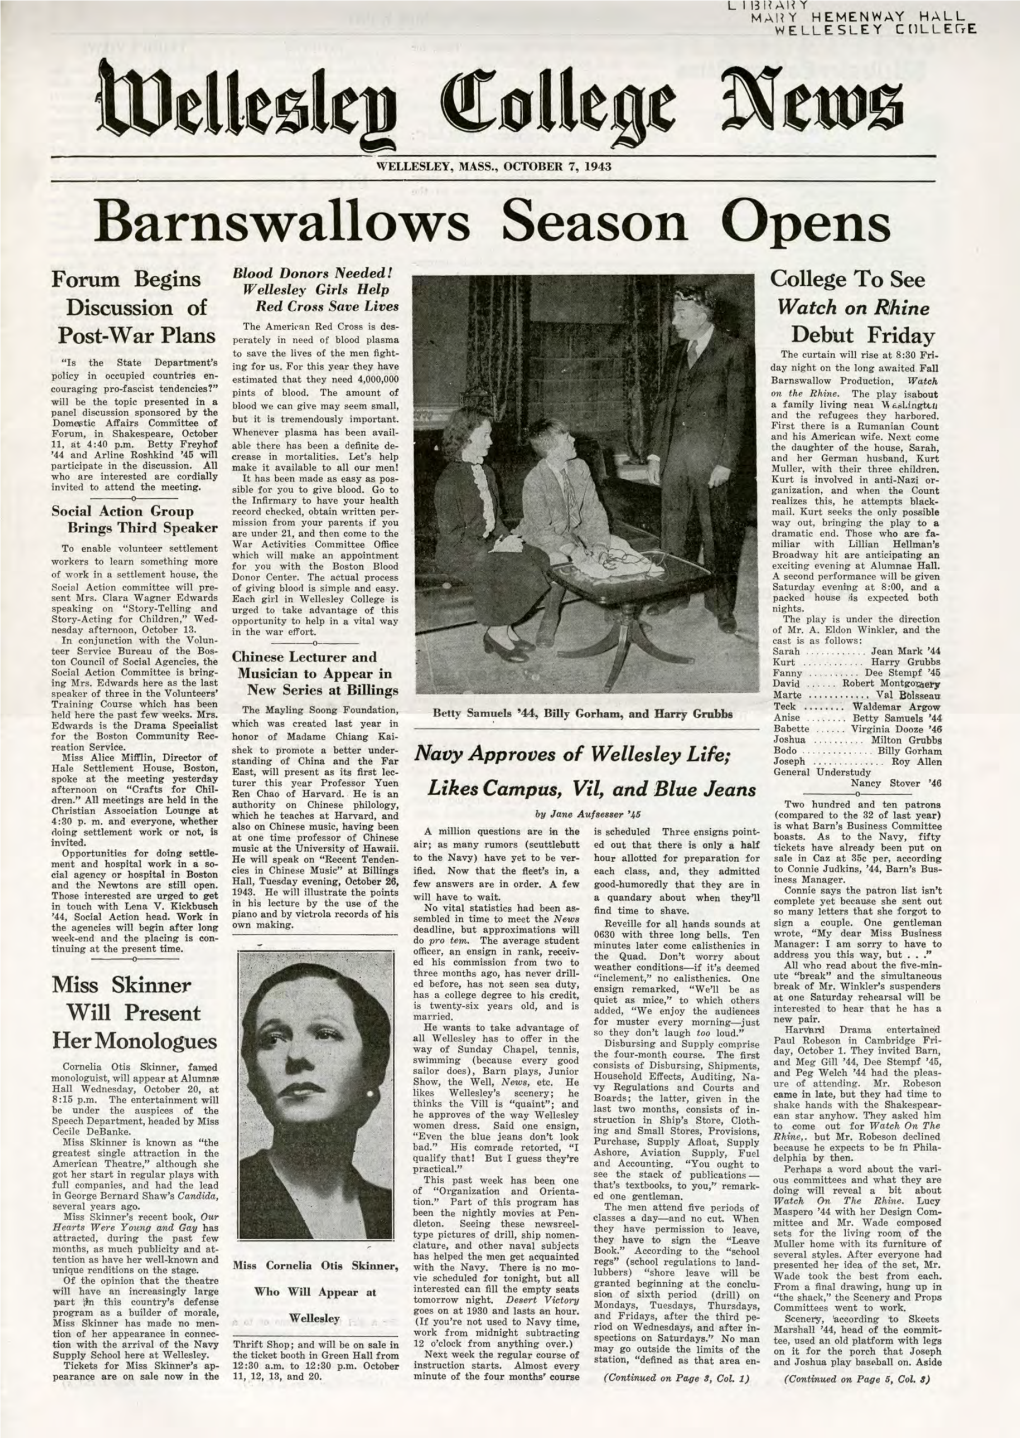 Barnswallows Season Opens